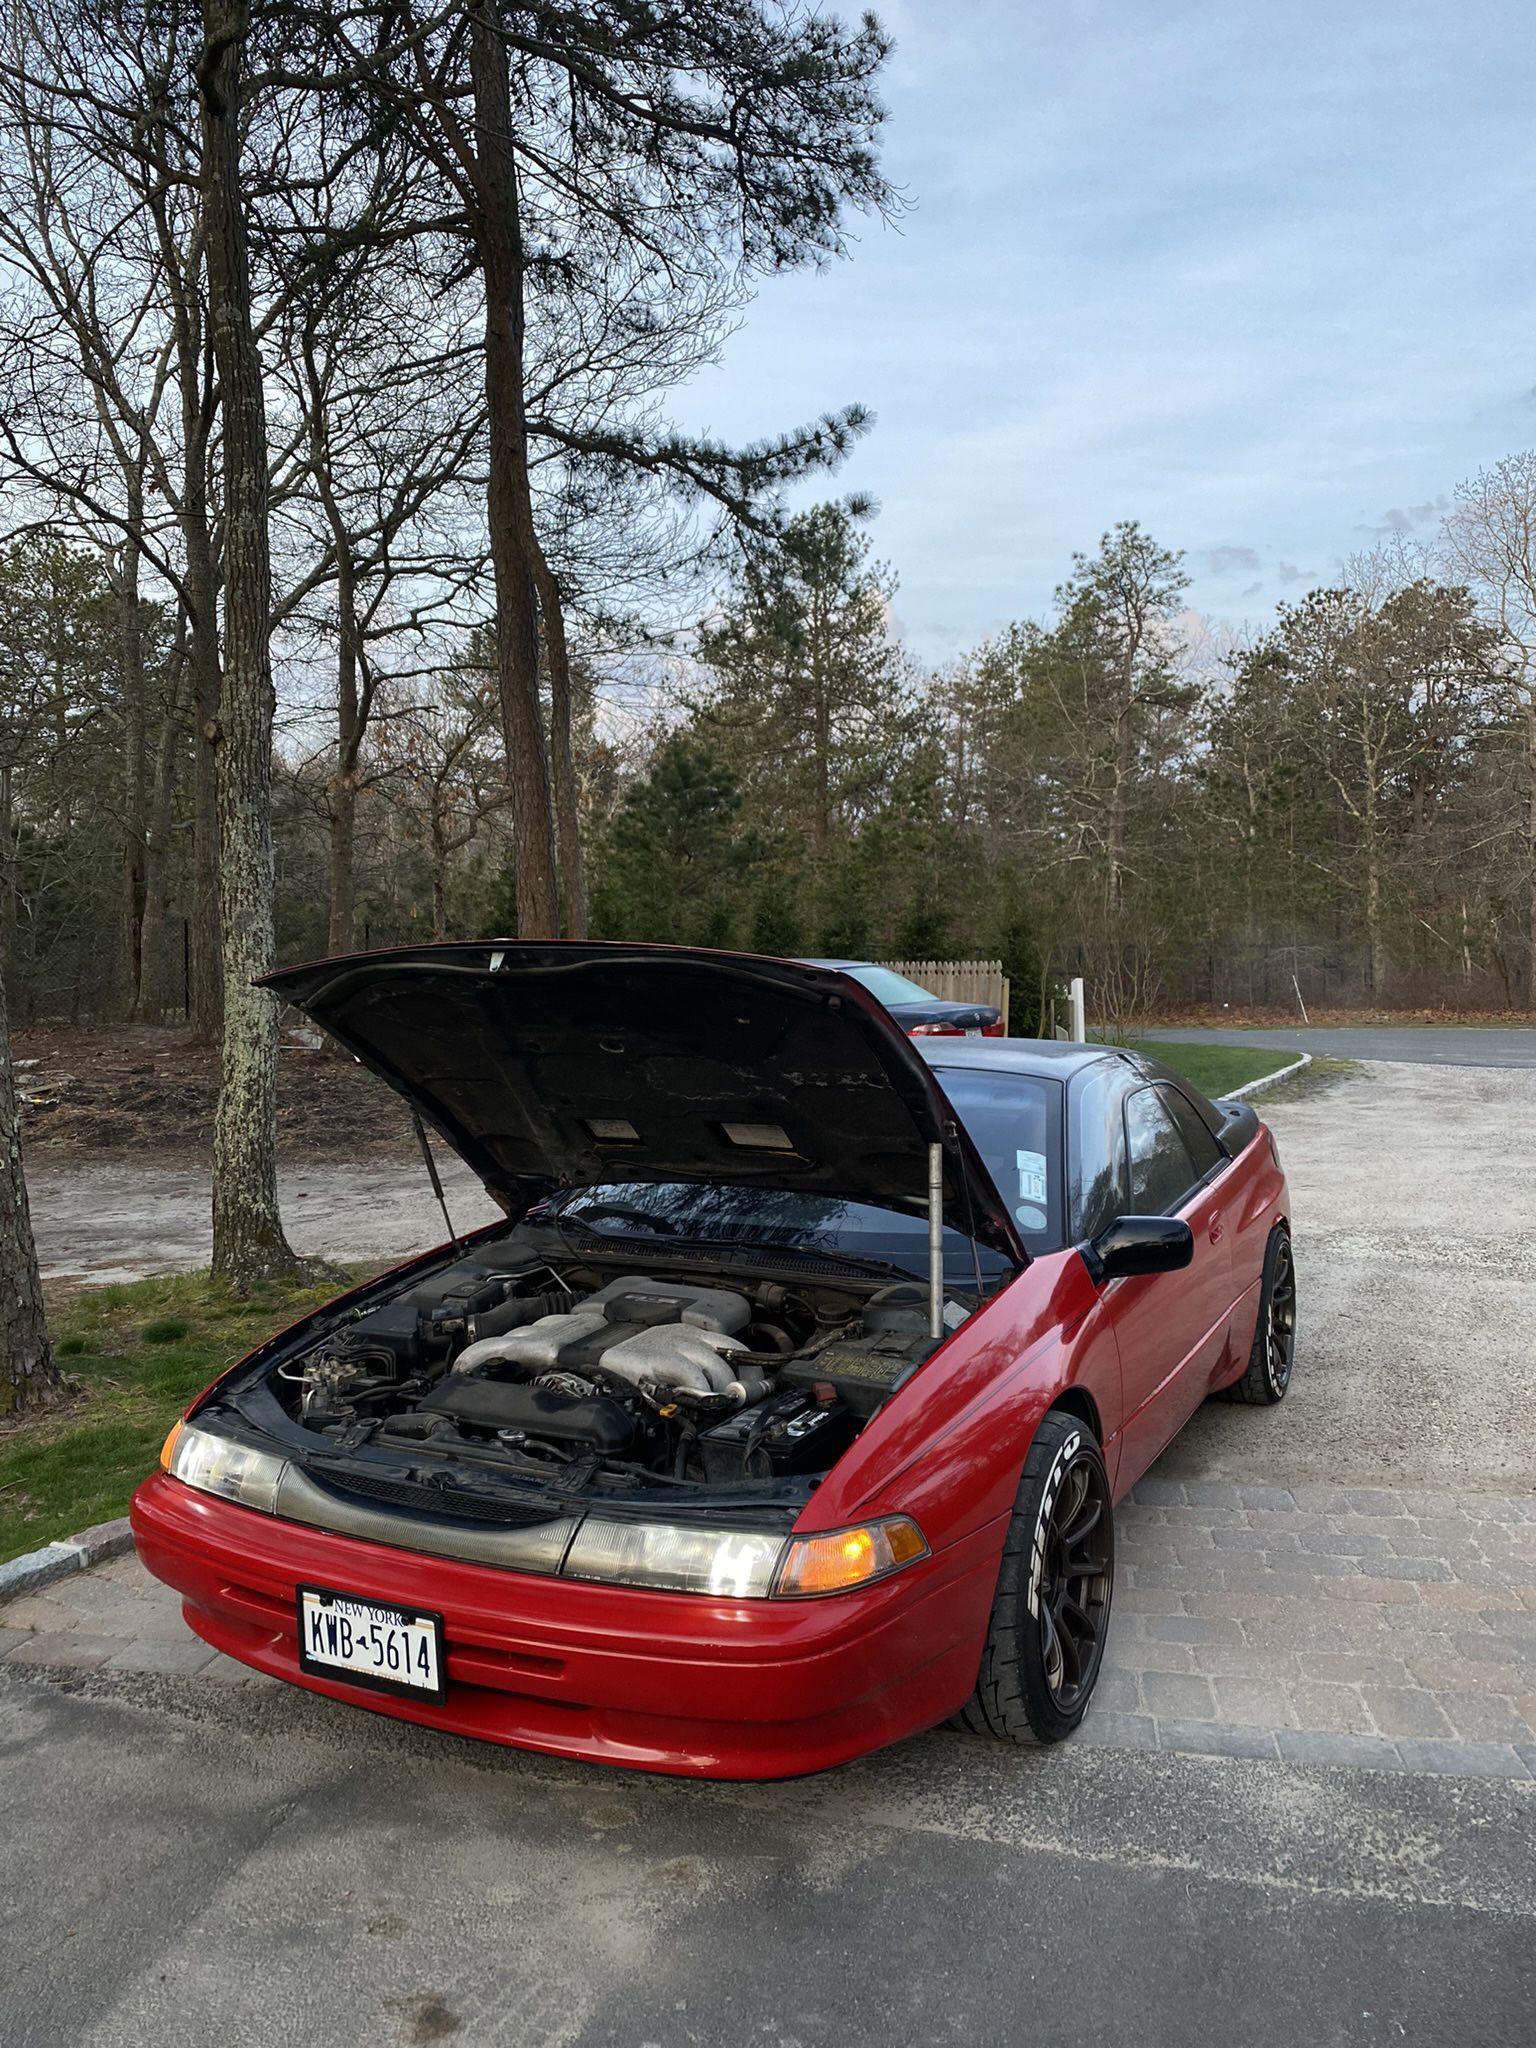 1992 Subaru SVX